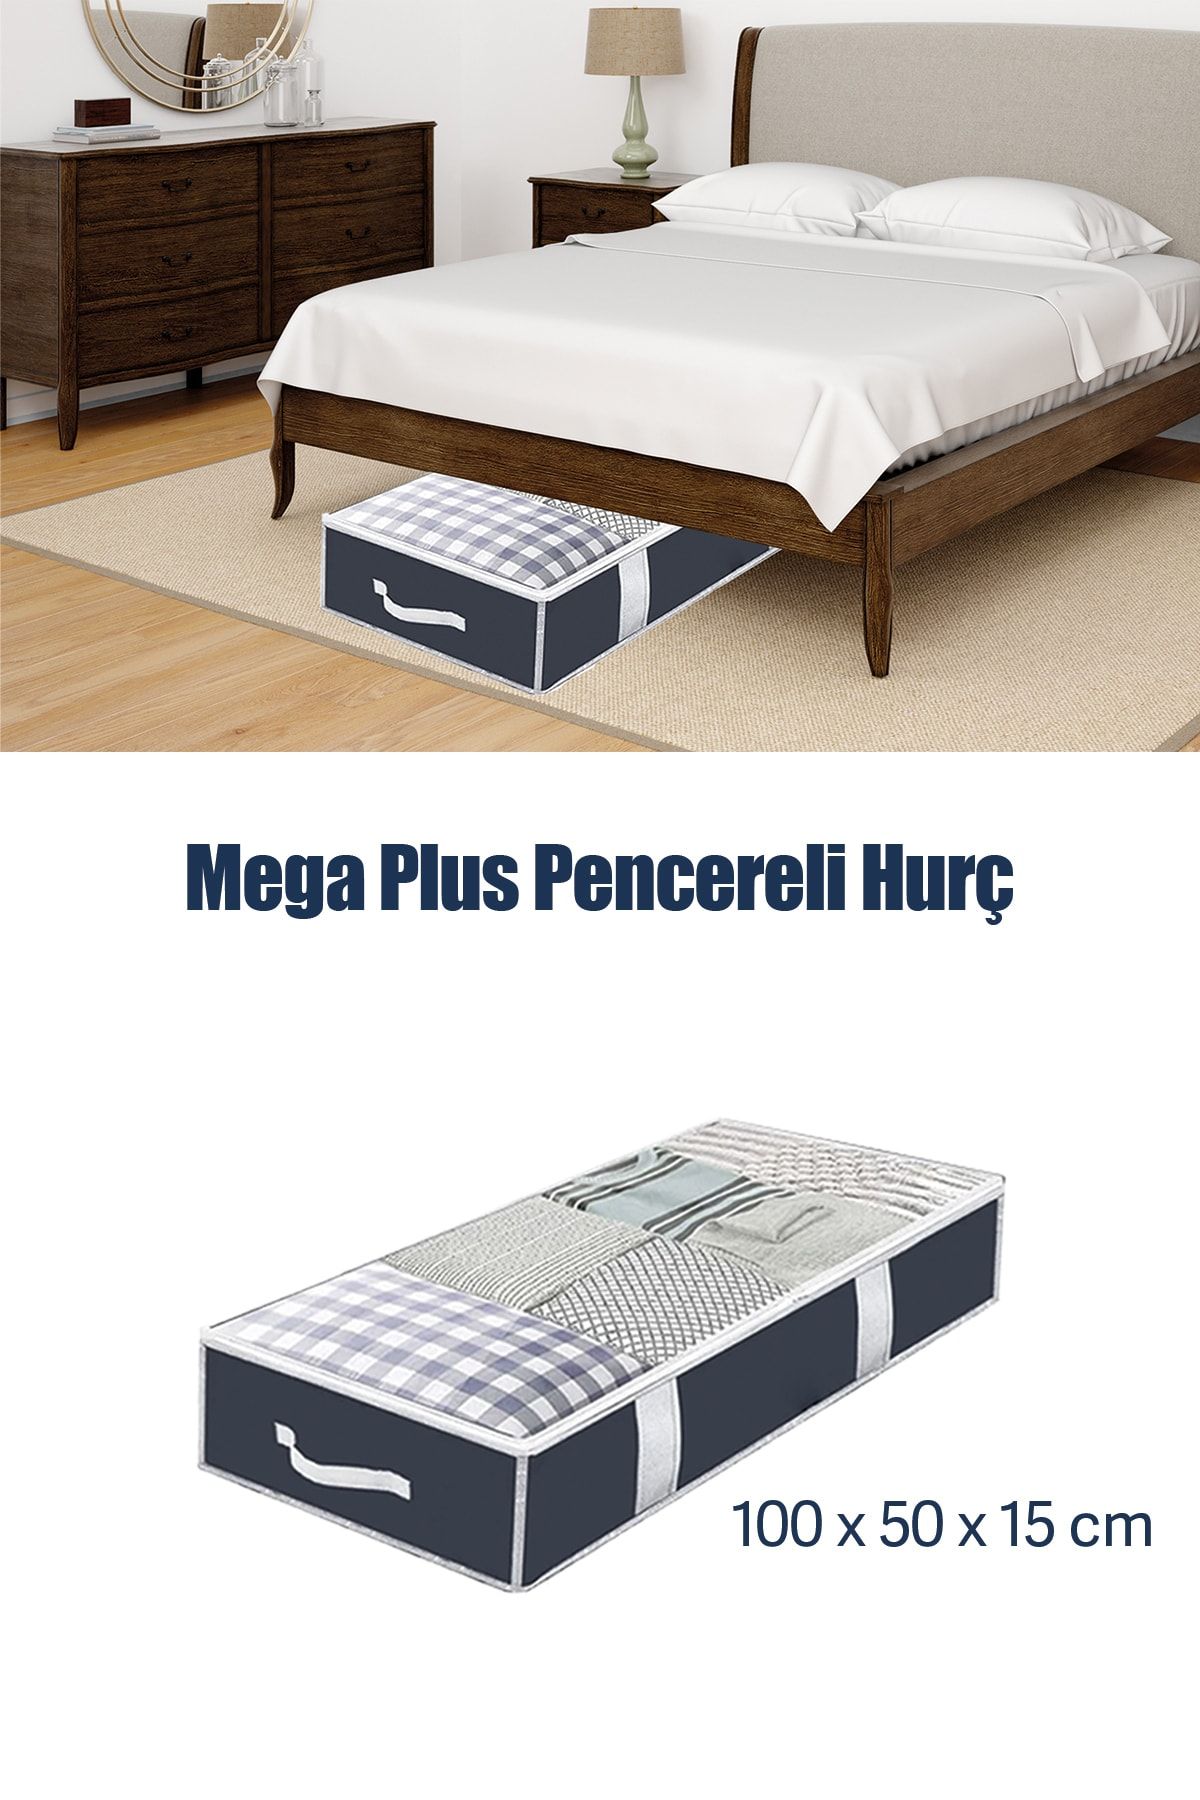 Meleni Home Mega Plus Pencereli Hurç - Baza Altı Yorgan Yastık Kıyafet Saklama Hurcu 100x50x15cm